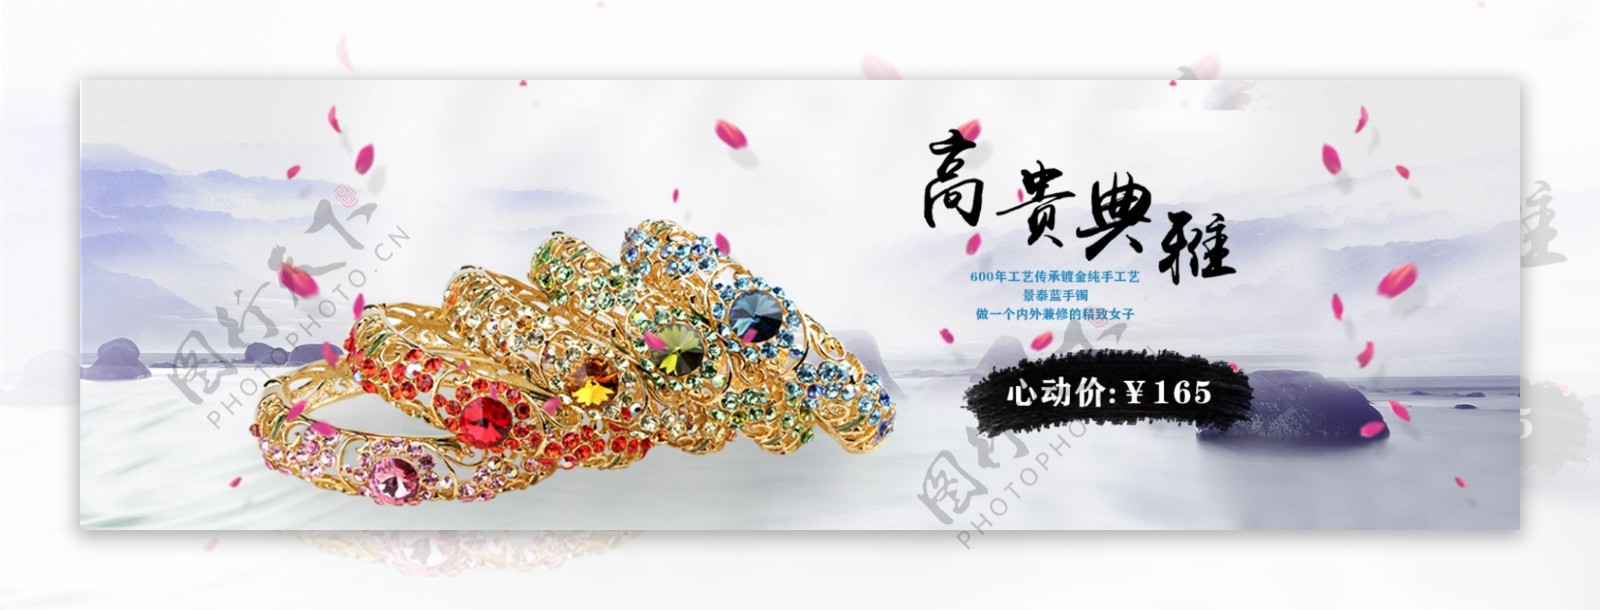 珠宝首饰景泰蓝手镯中国风花瓣轮播海报